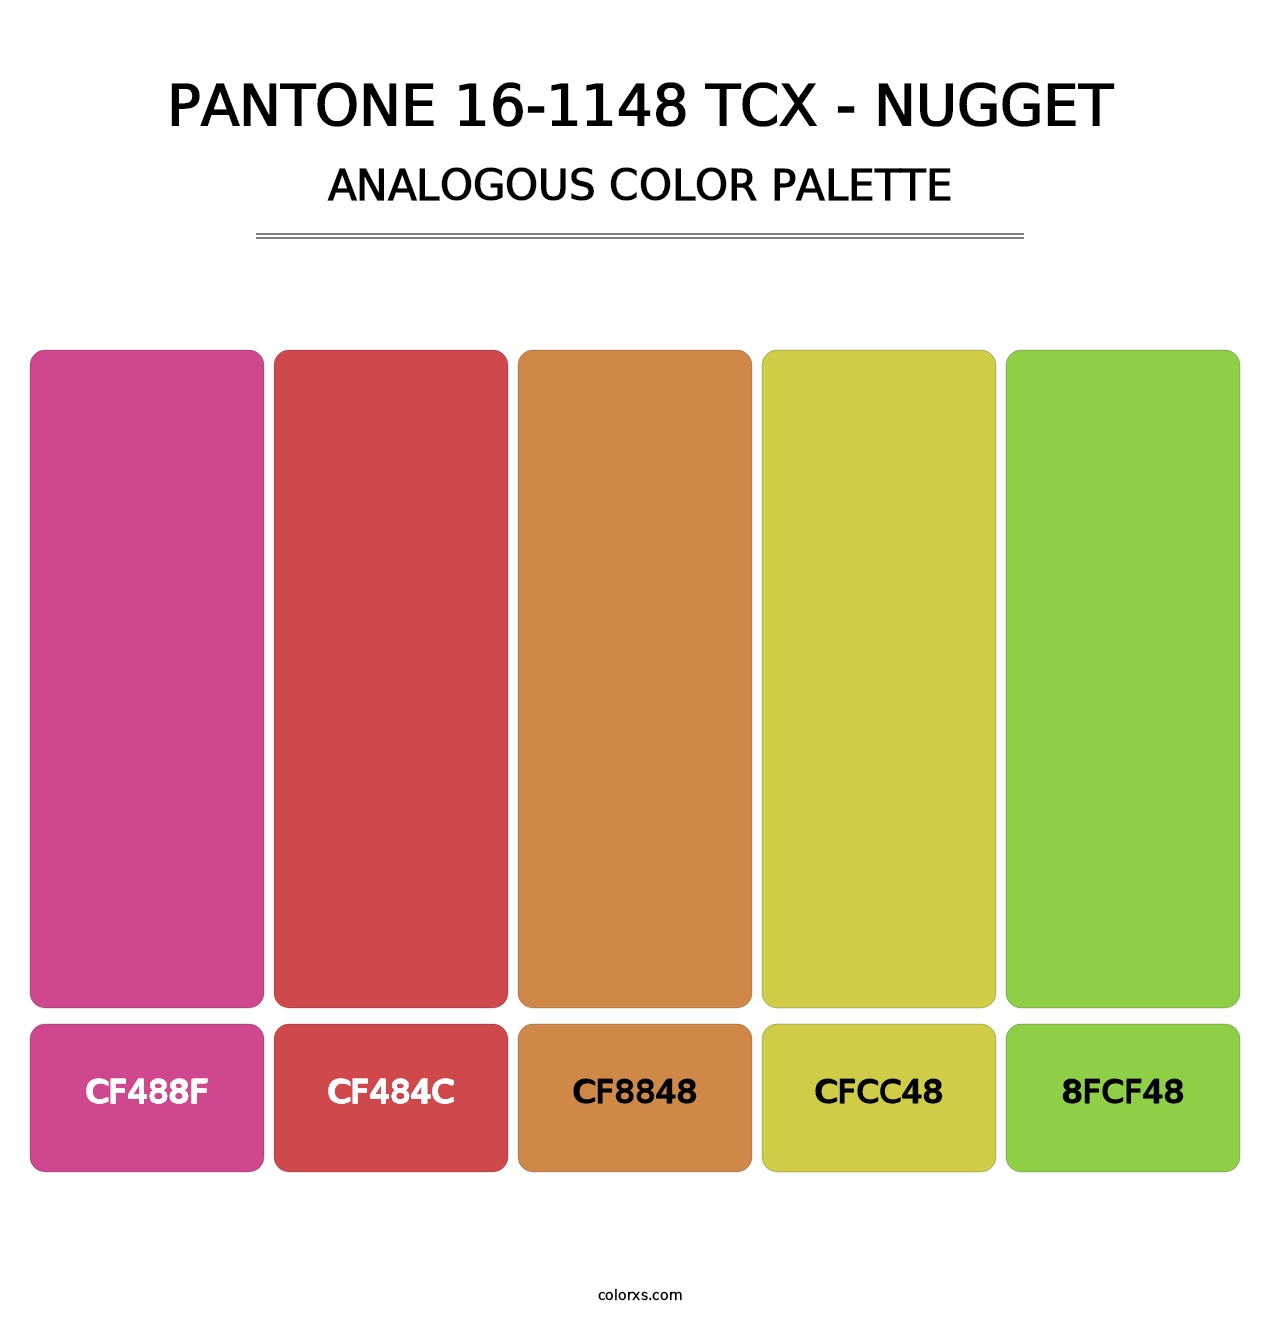 PANTONE 16-1148 TCX - Nugget - Analogous Color Palette